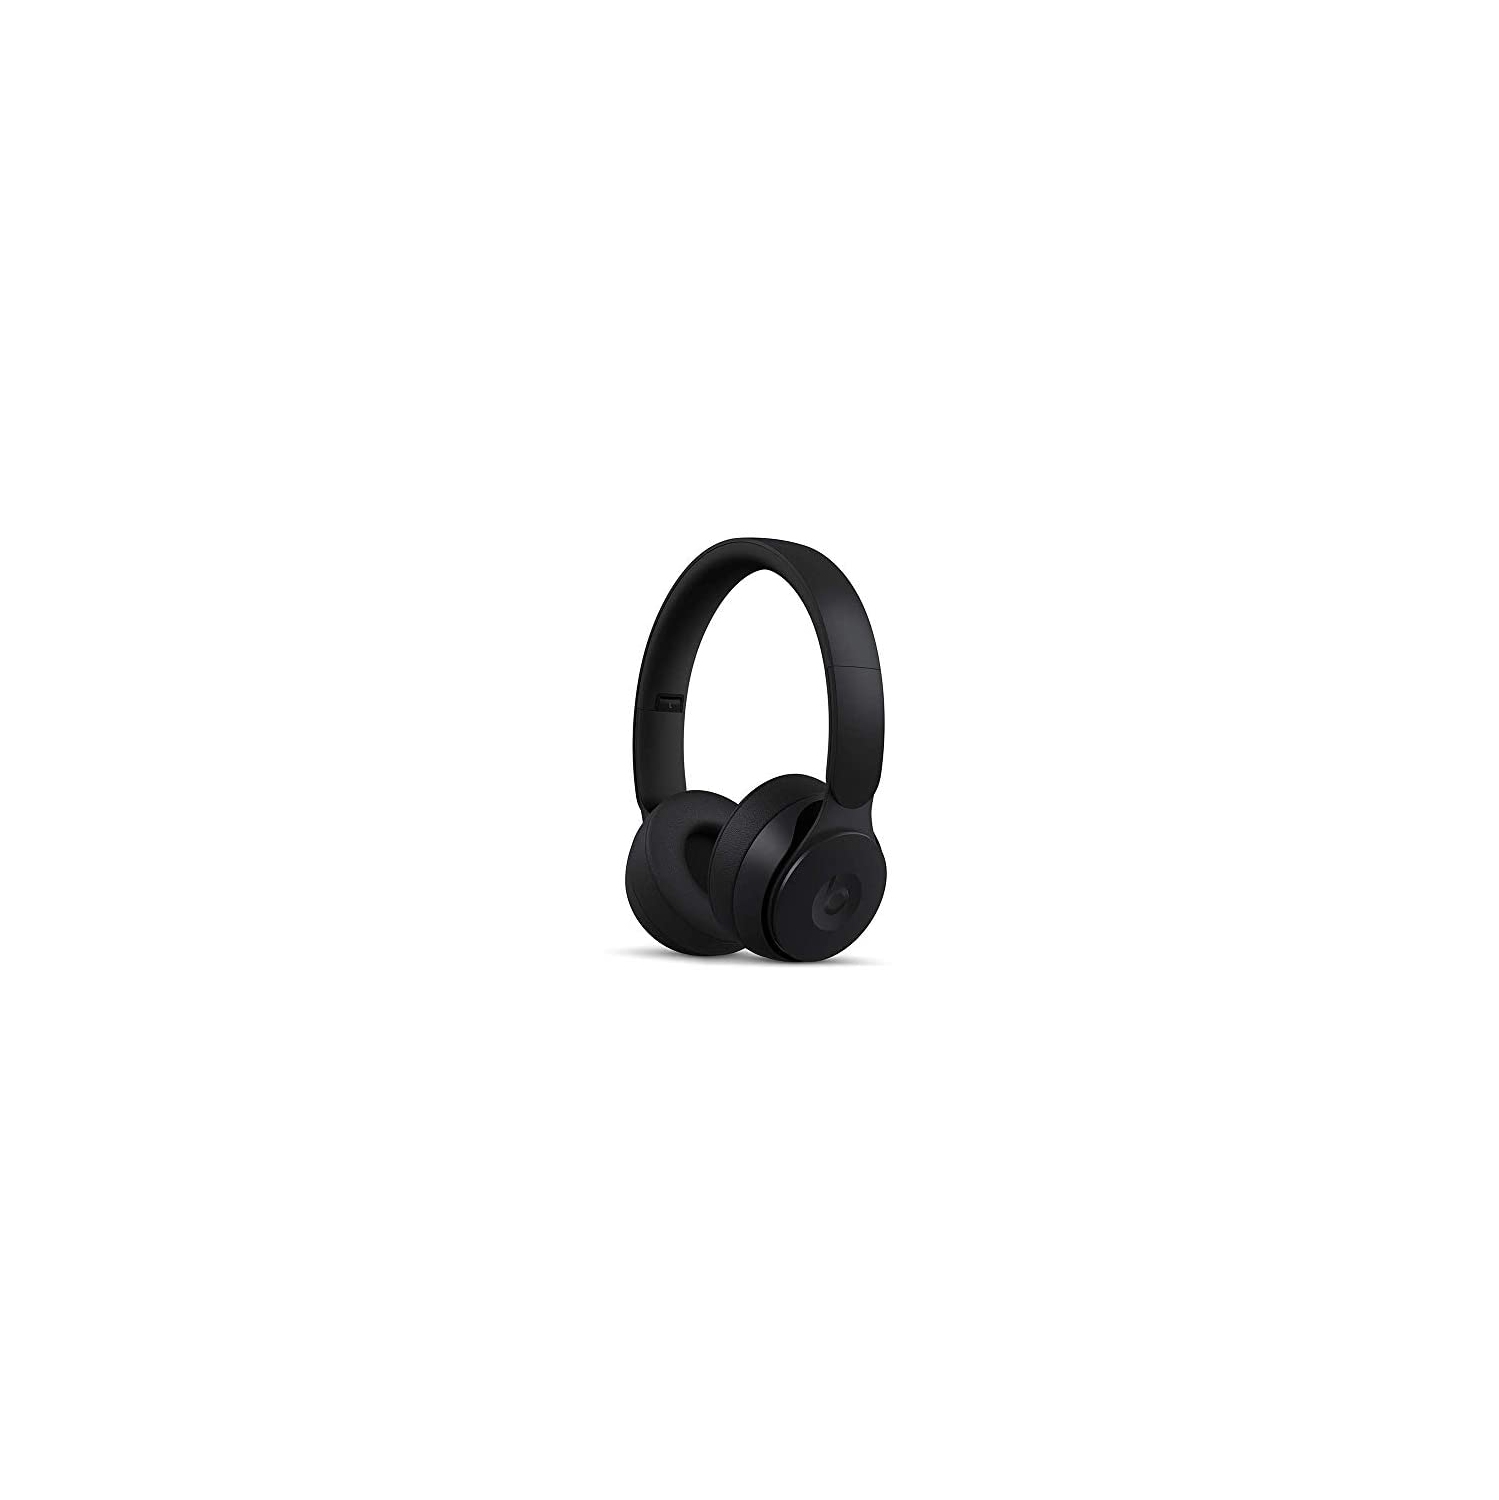 Beats Solo Pro Wireless Noise Cancelling On-Ear Headphones - Black (Renewed)